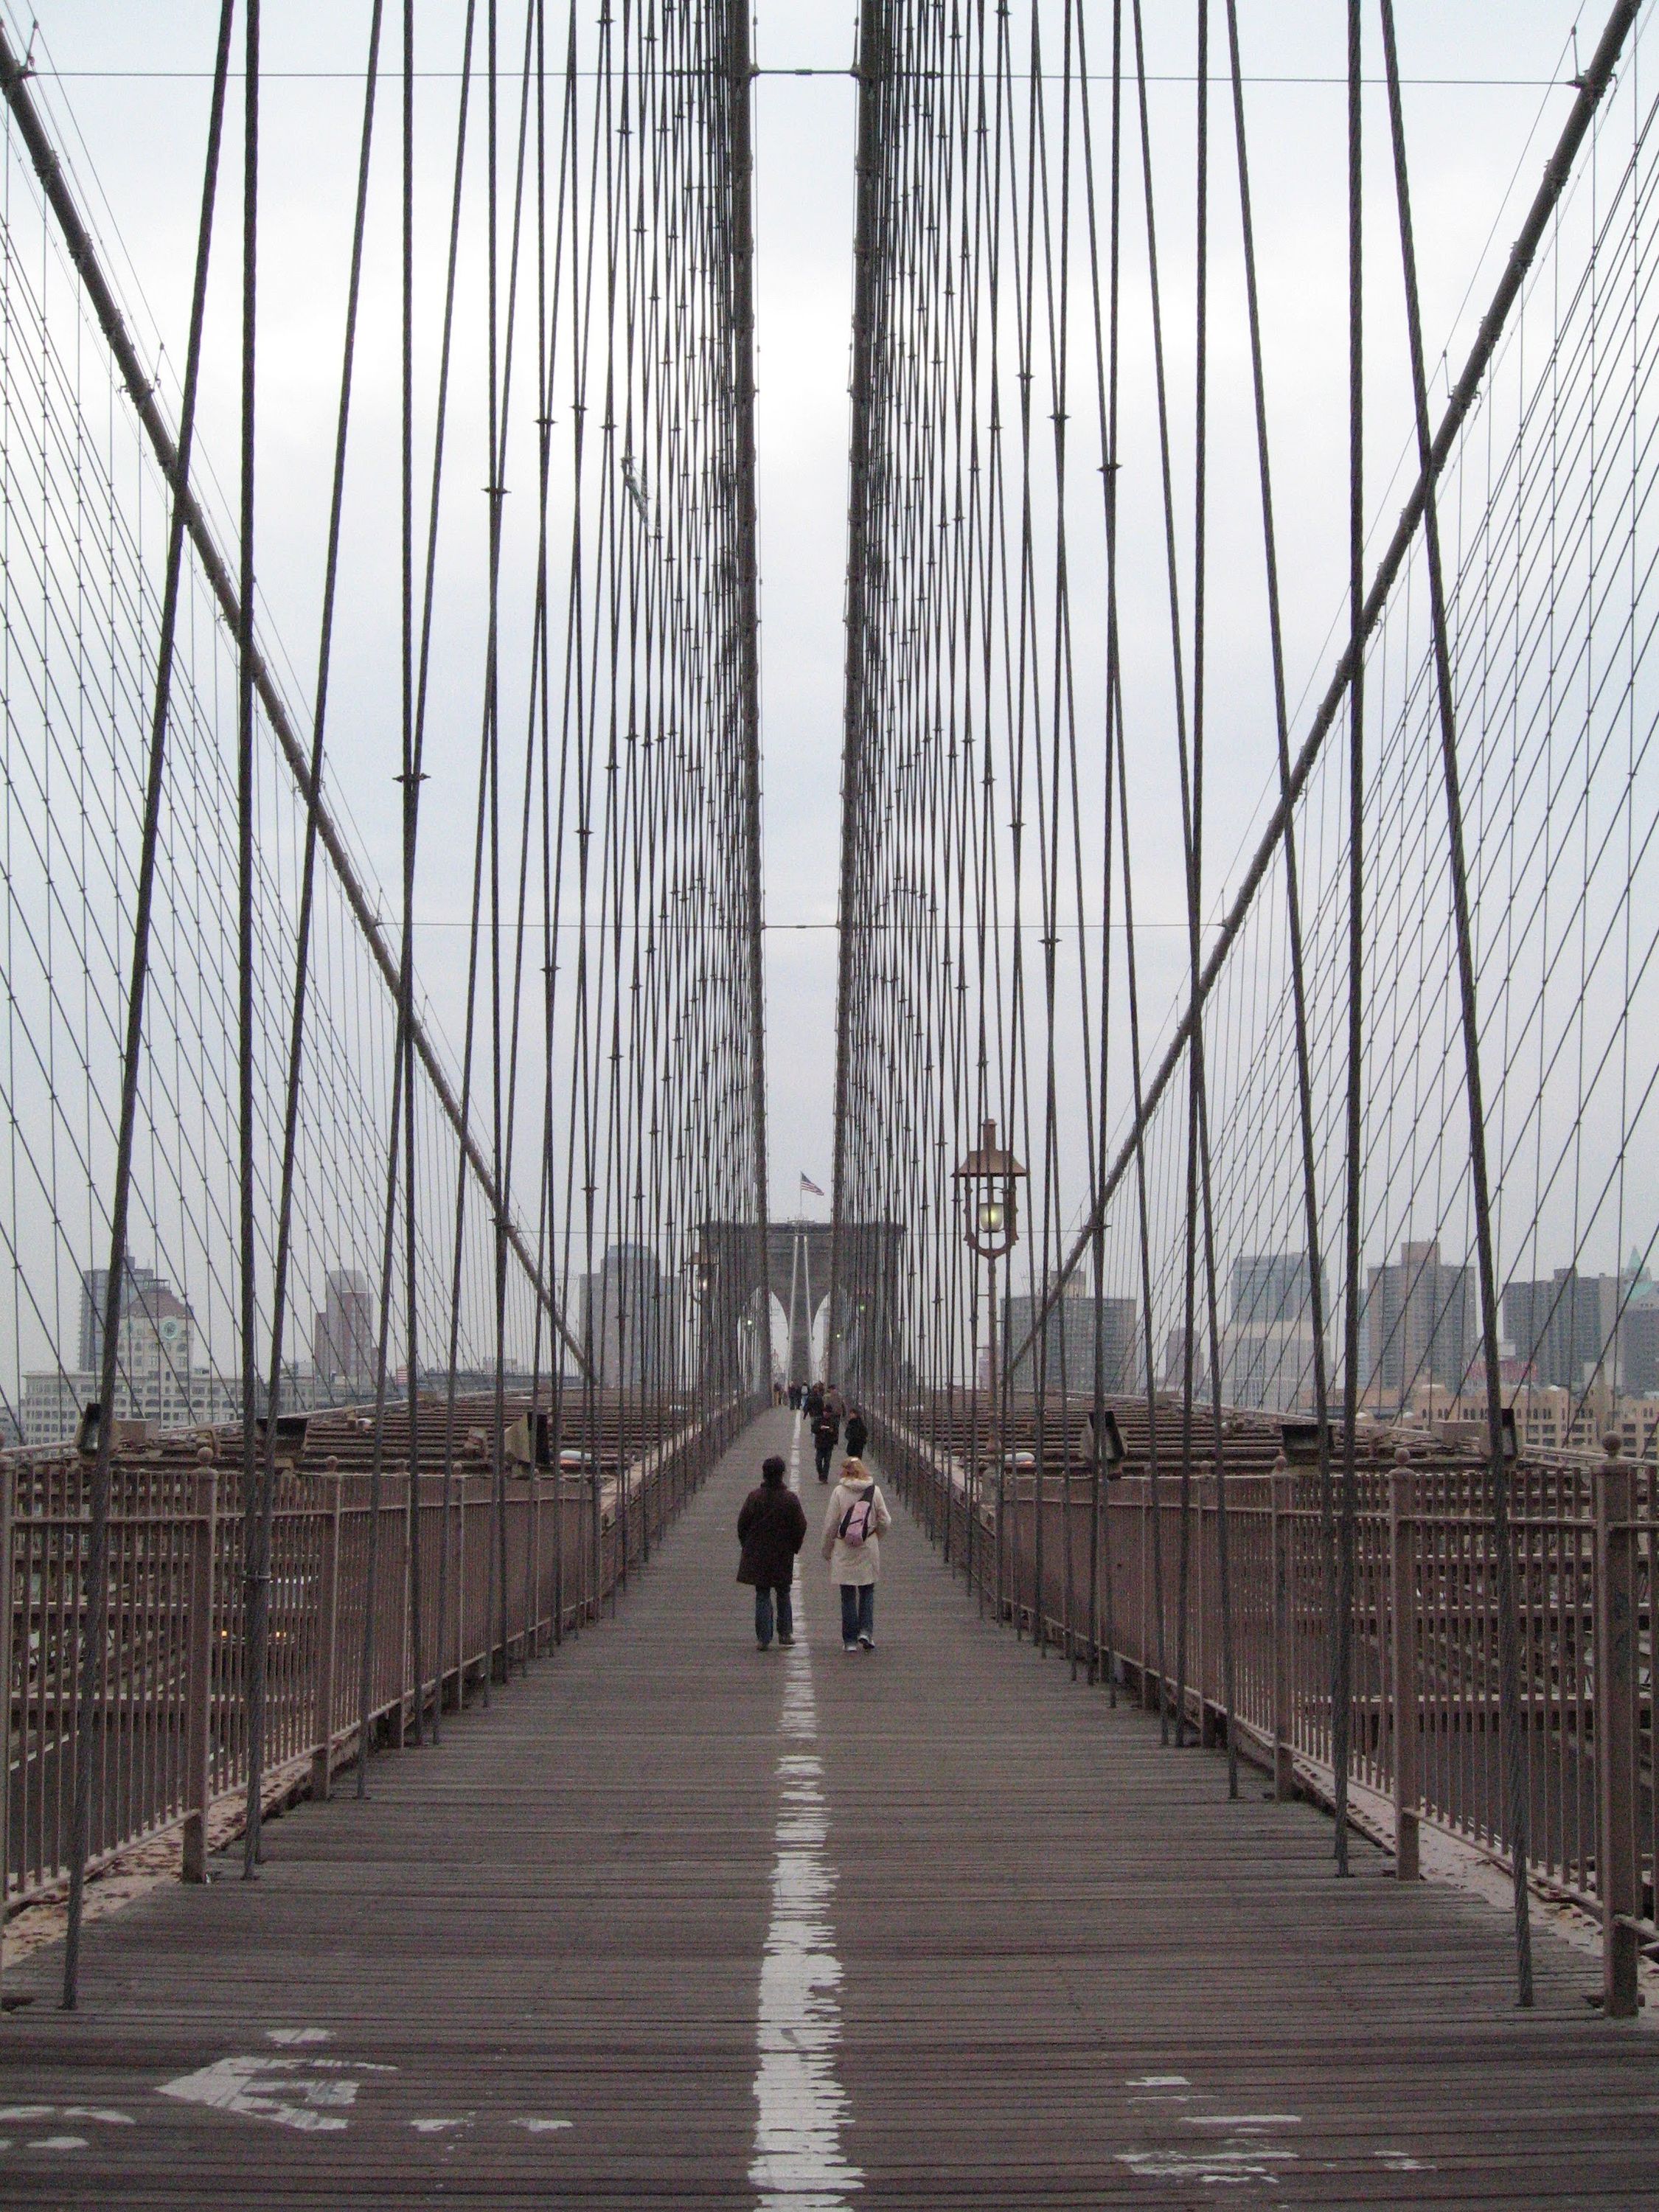 It’s the Brooklyn Bridge!